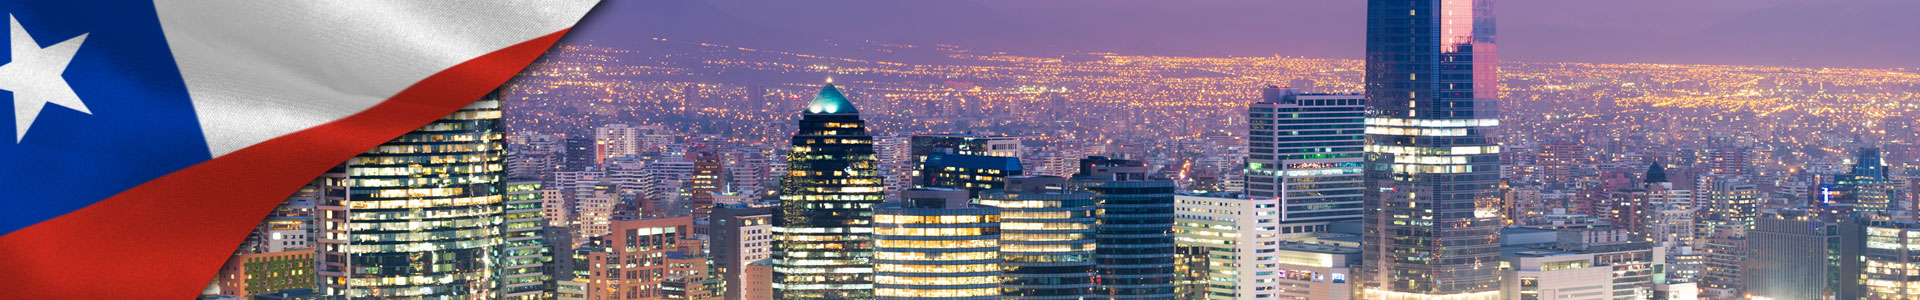 Bandera de Chile y edificios de la capital Santiago en la noche